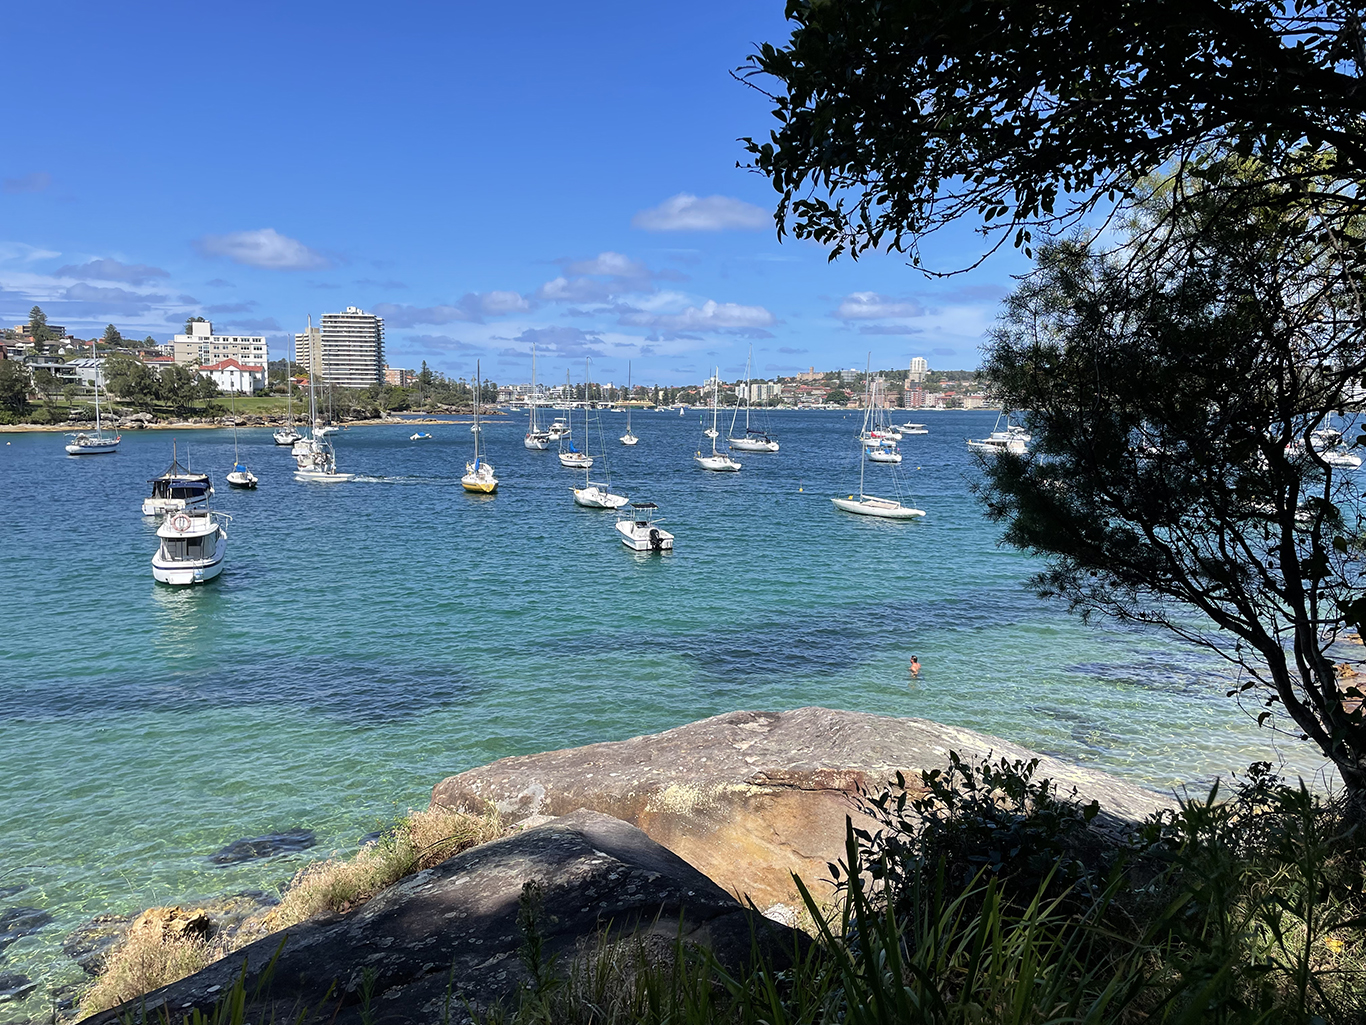 An Iconic Sydney walk